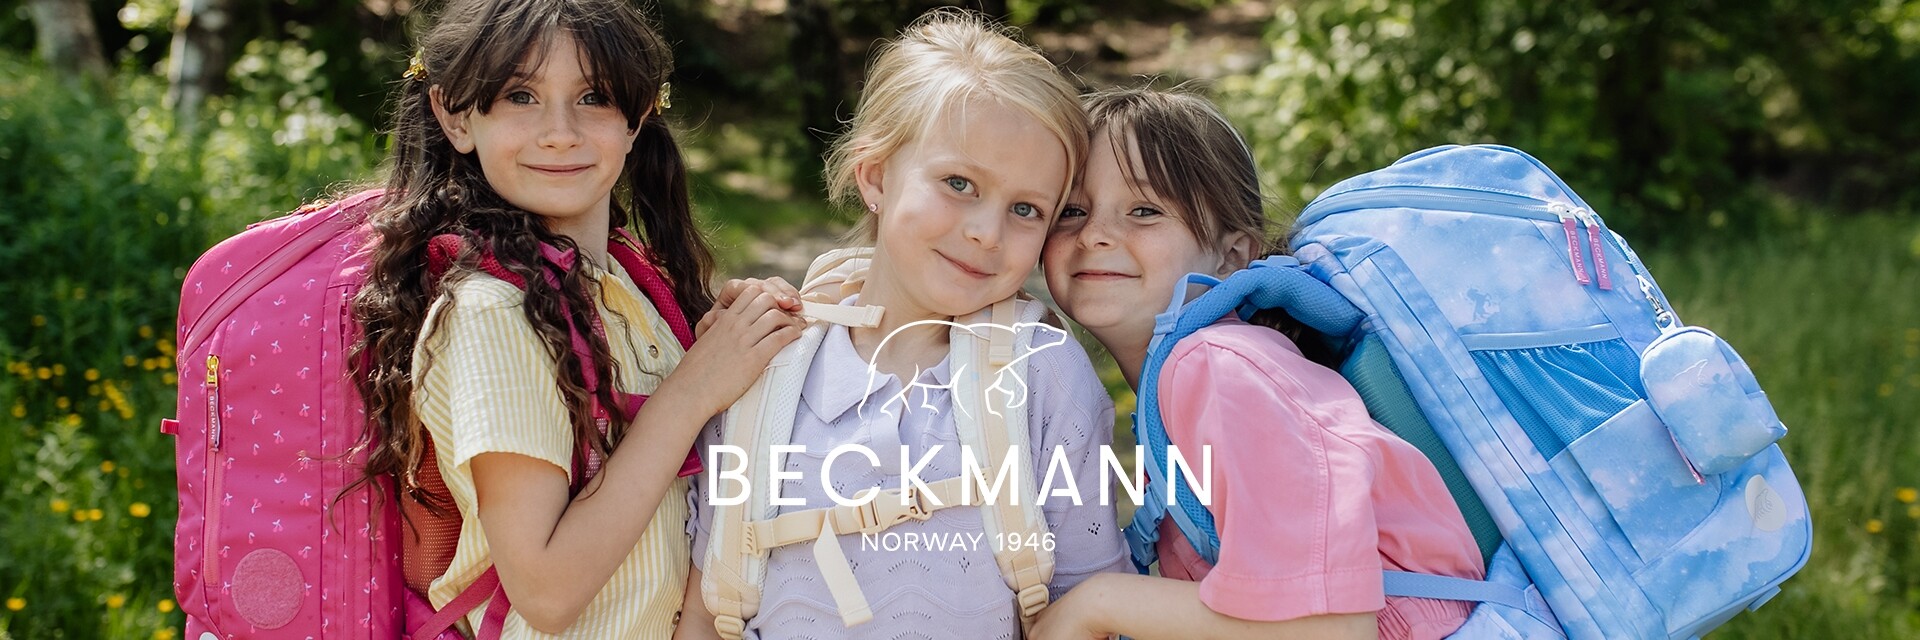 Beckmann Grundschule Motiv 6